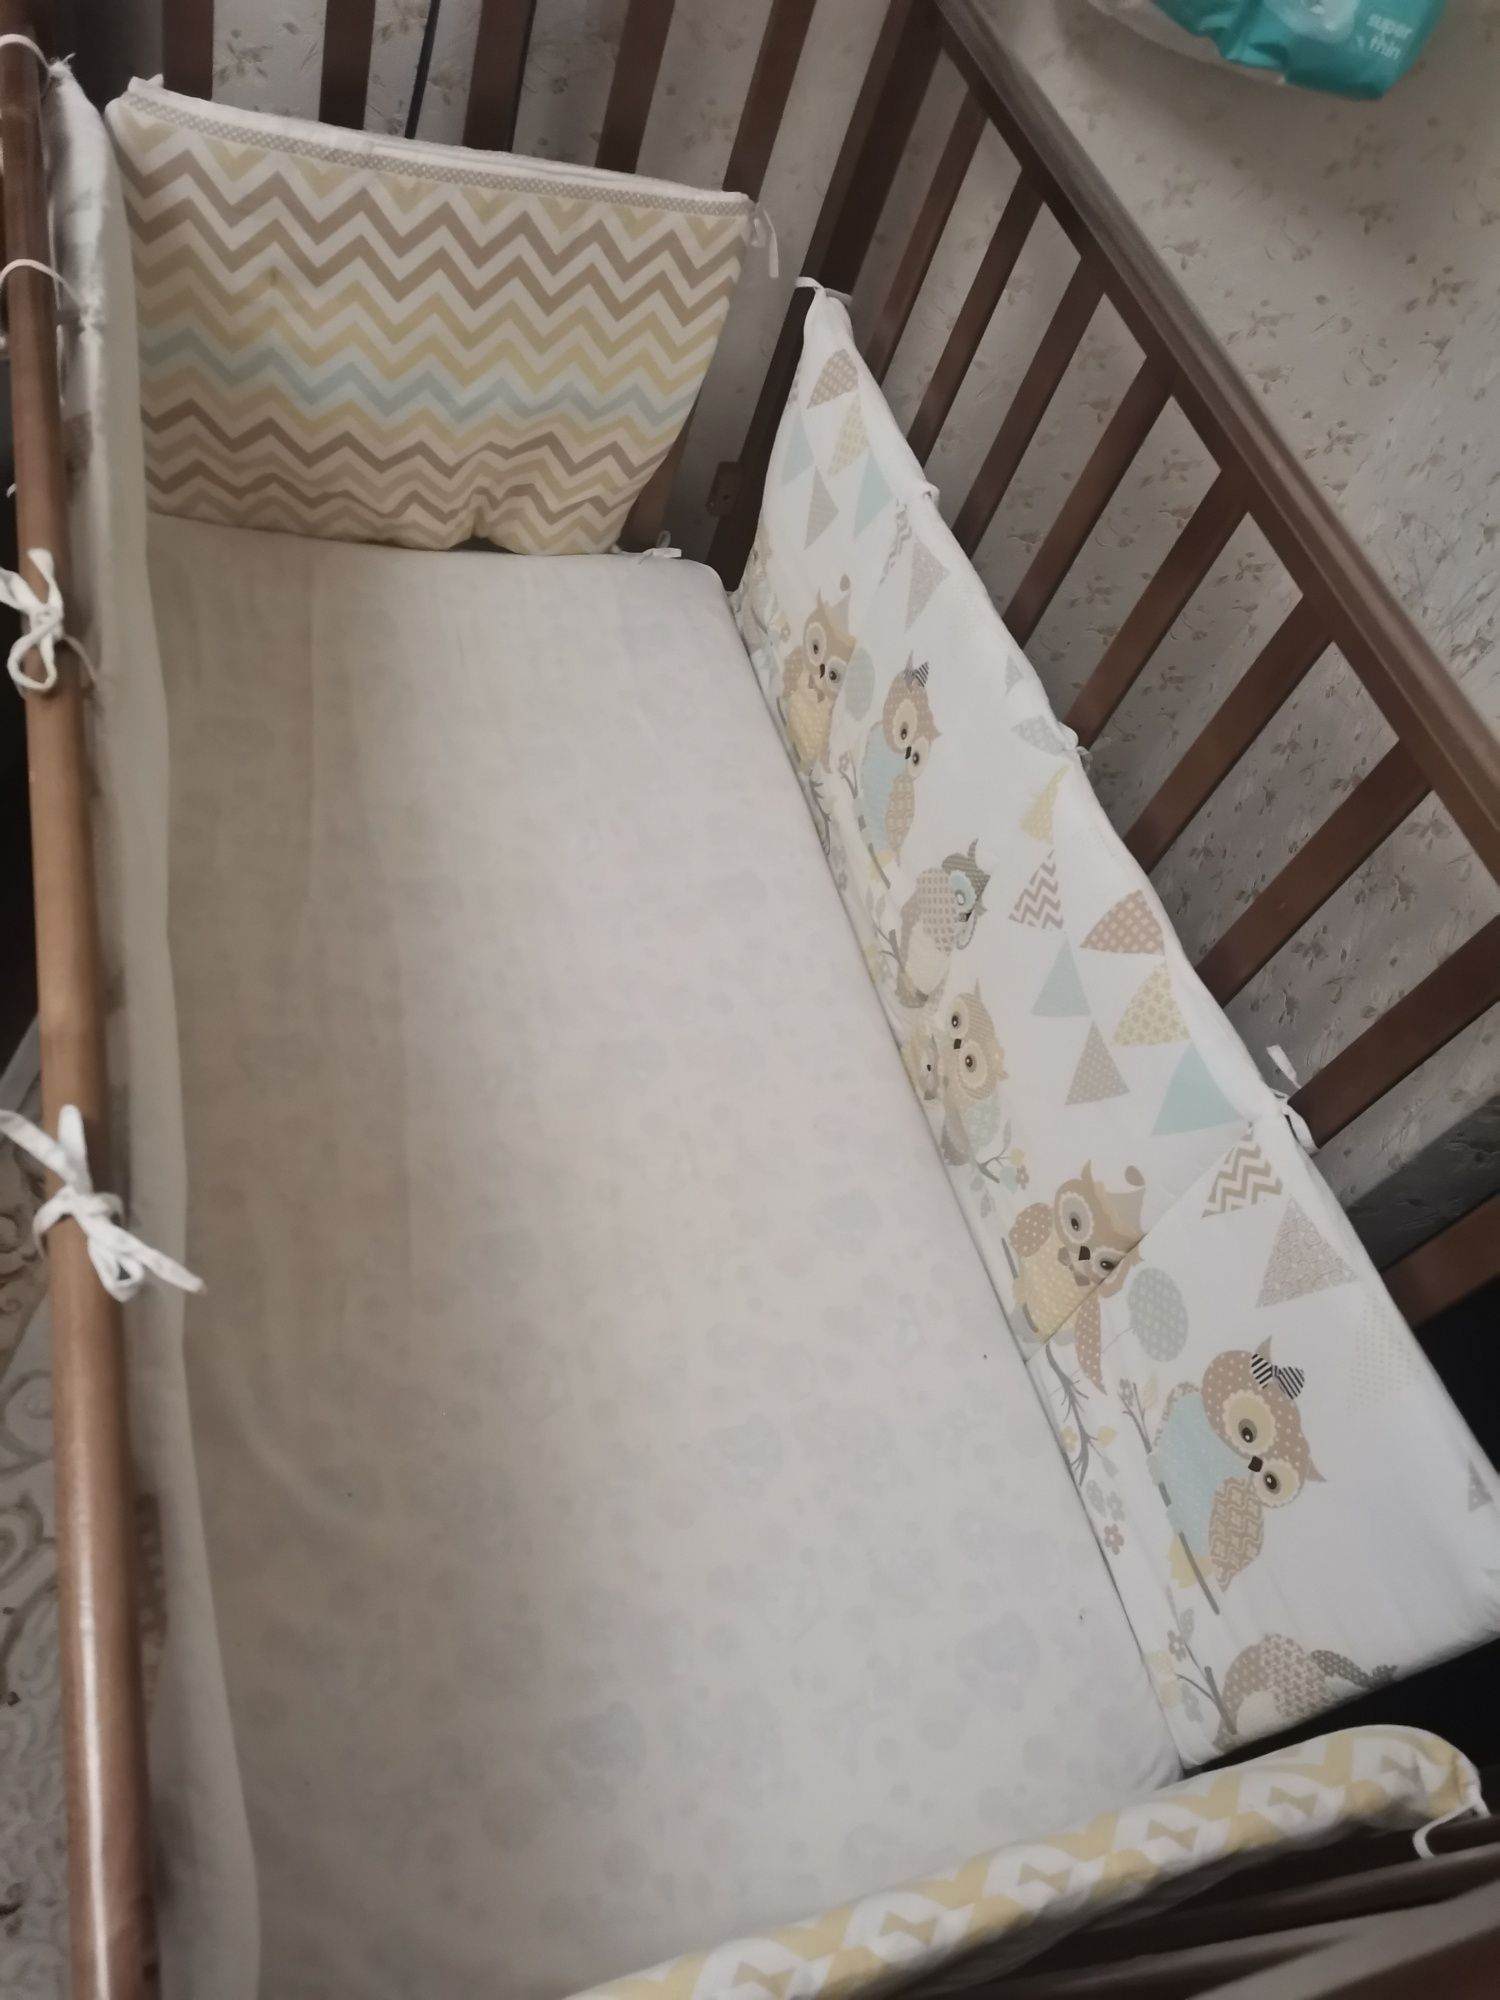 Детская кровать от рождения до 3 лет